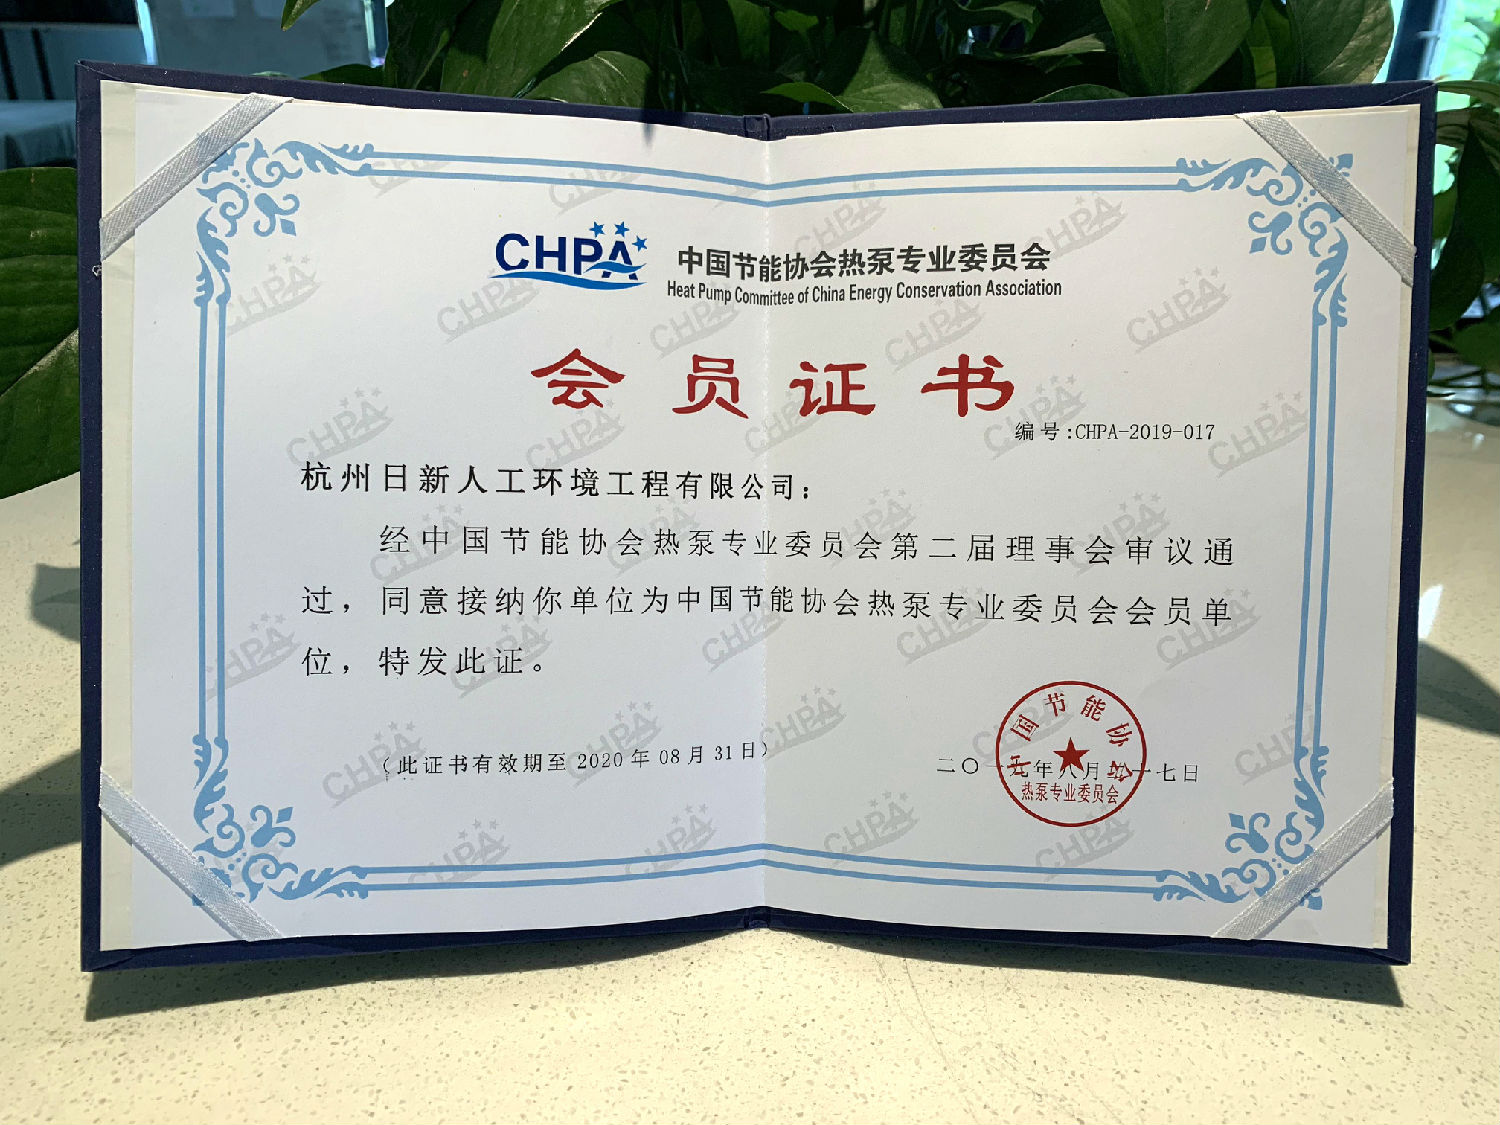 2019年日新环境 CHPA中国节能协会热泵专业委员会会员单位